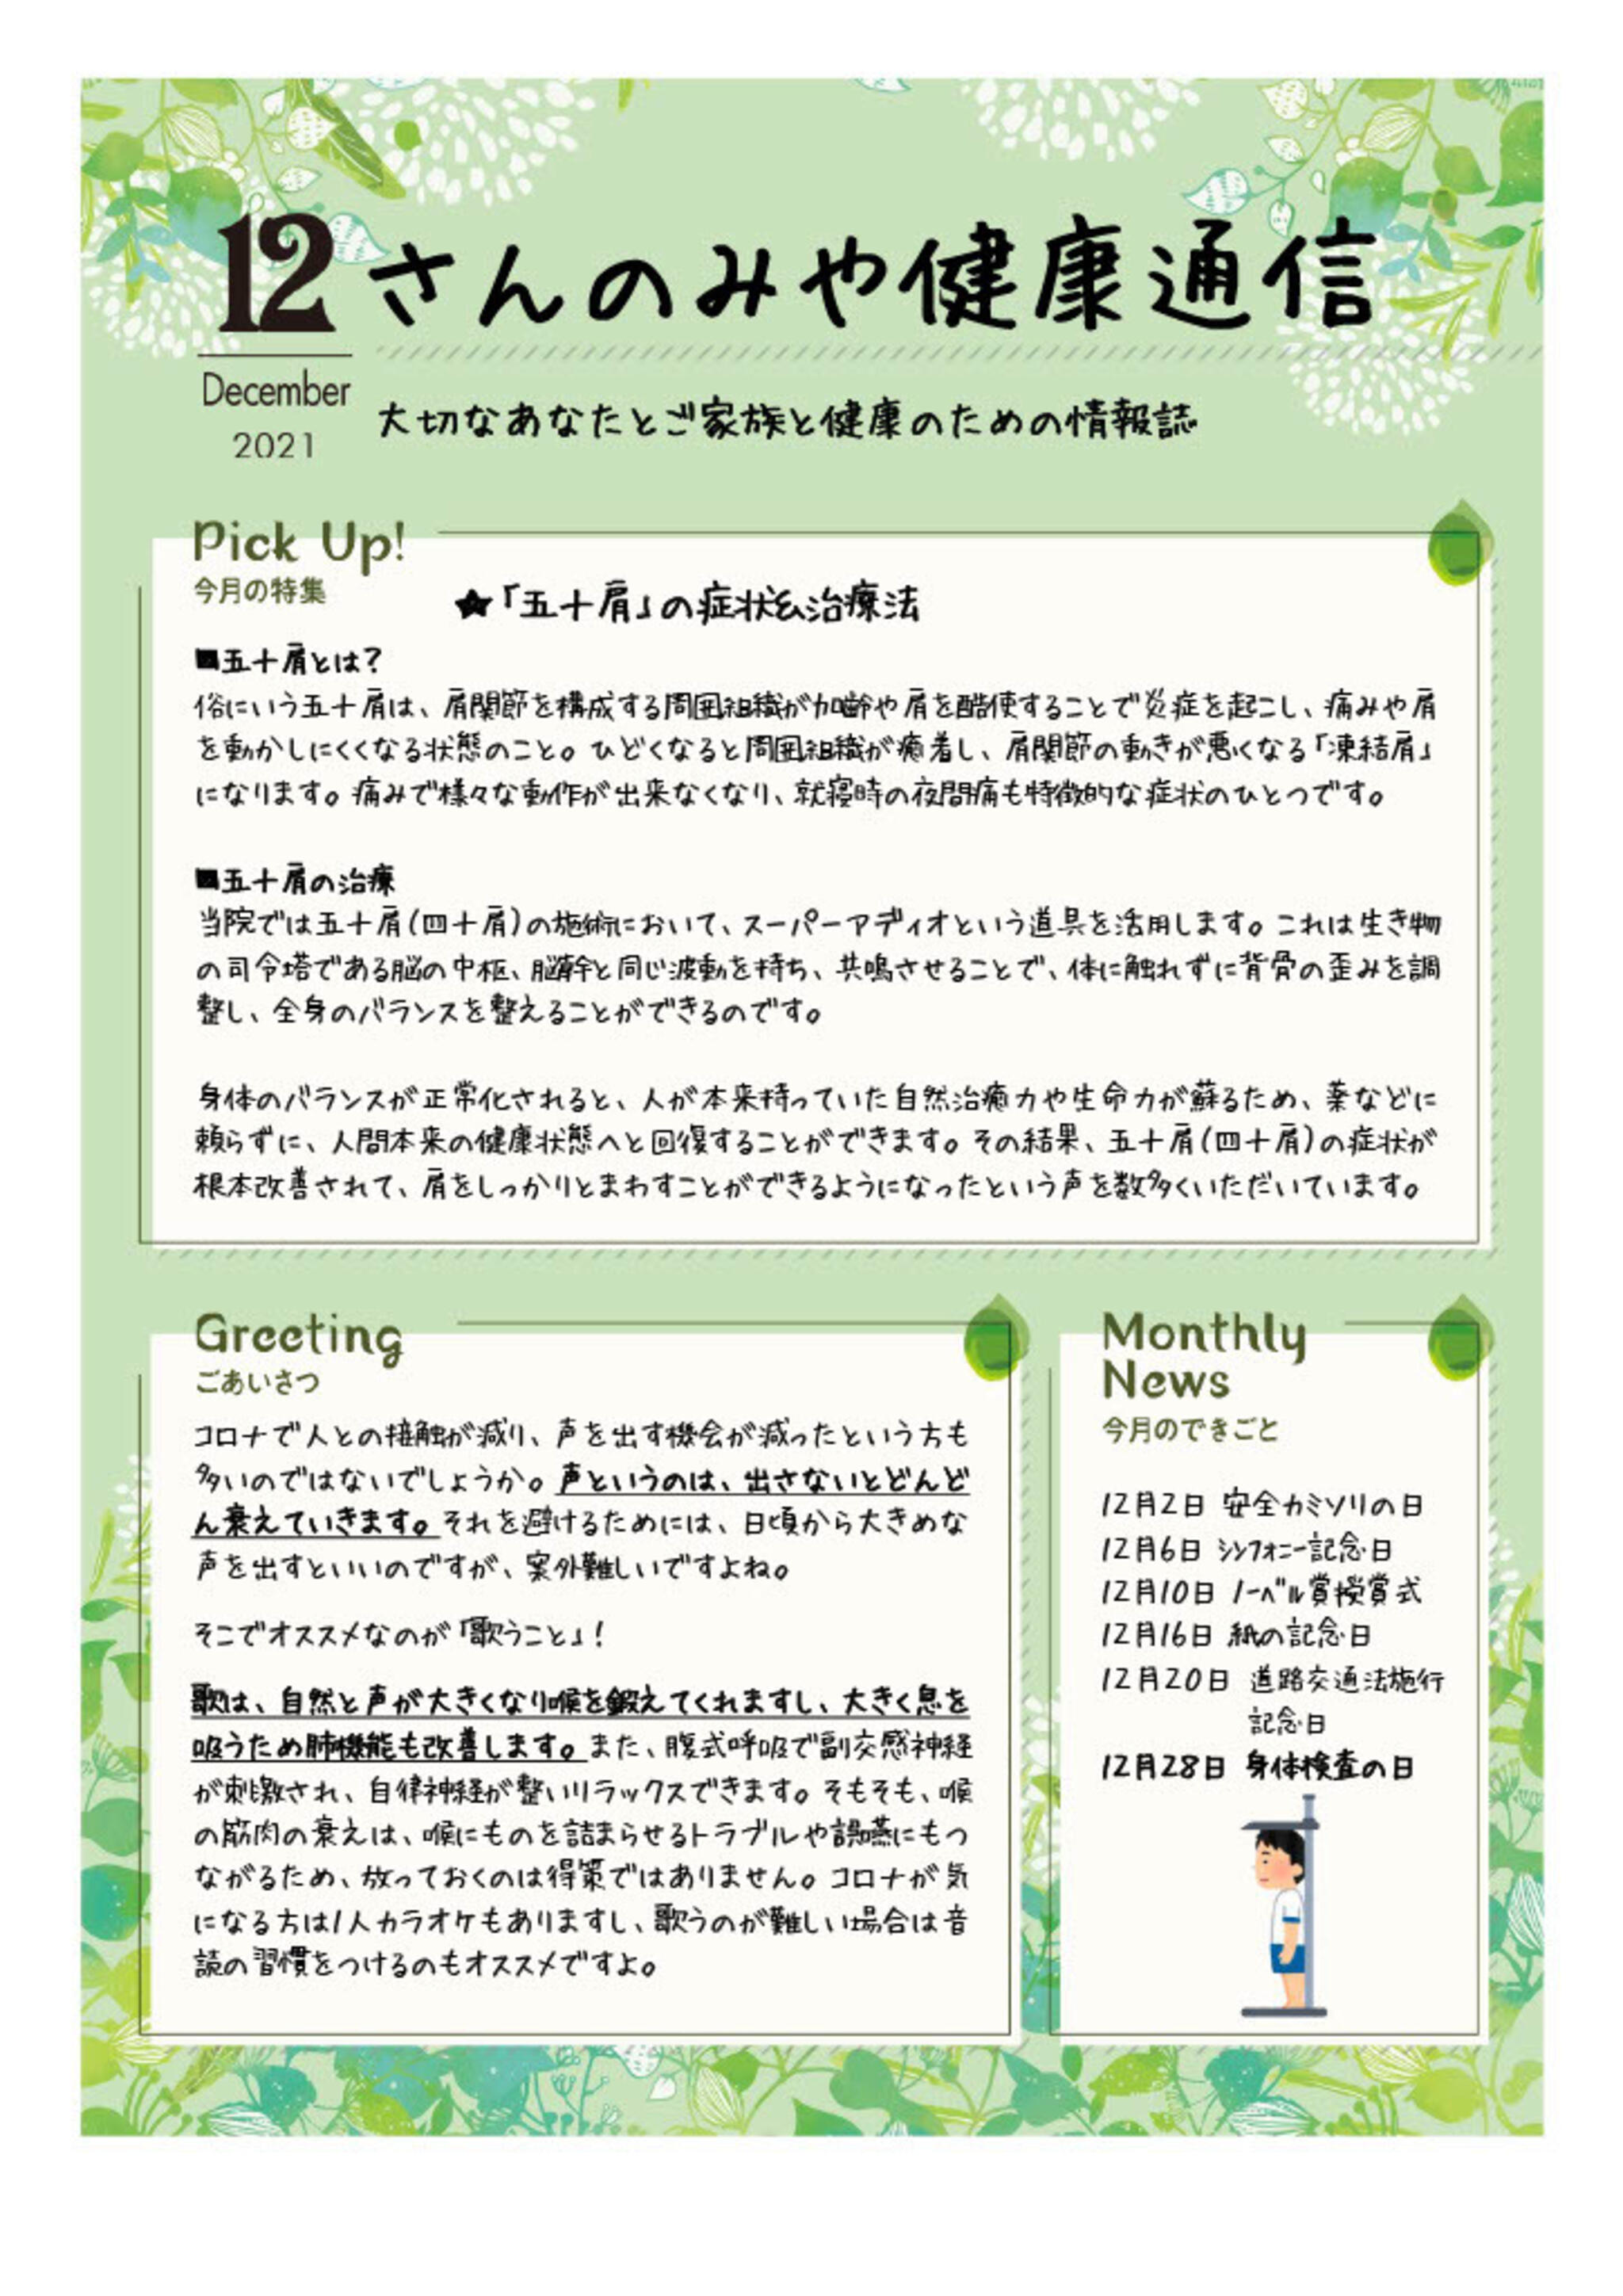 神戸三宮むつう整体院からのお知らせ(「五十肩」の症状＆施術法)に関する写真